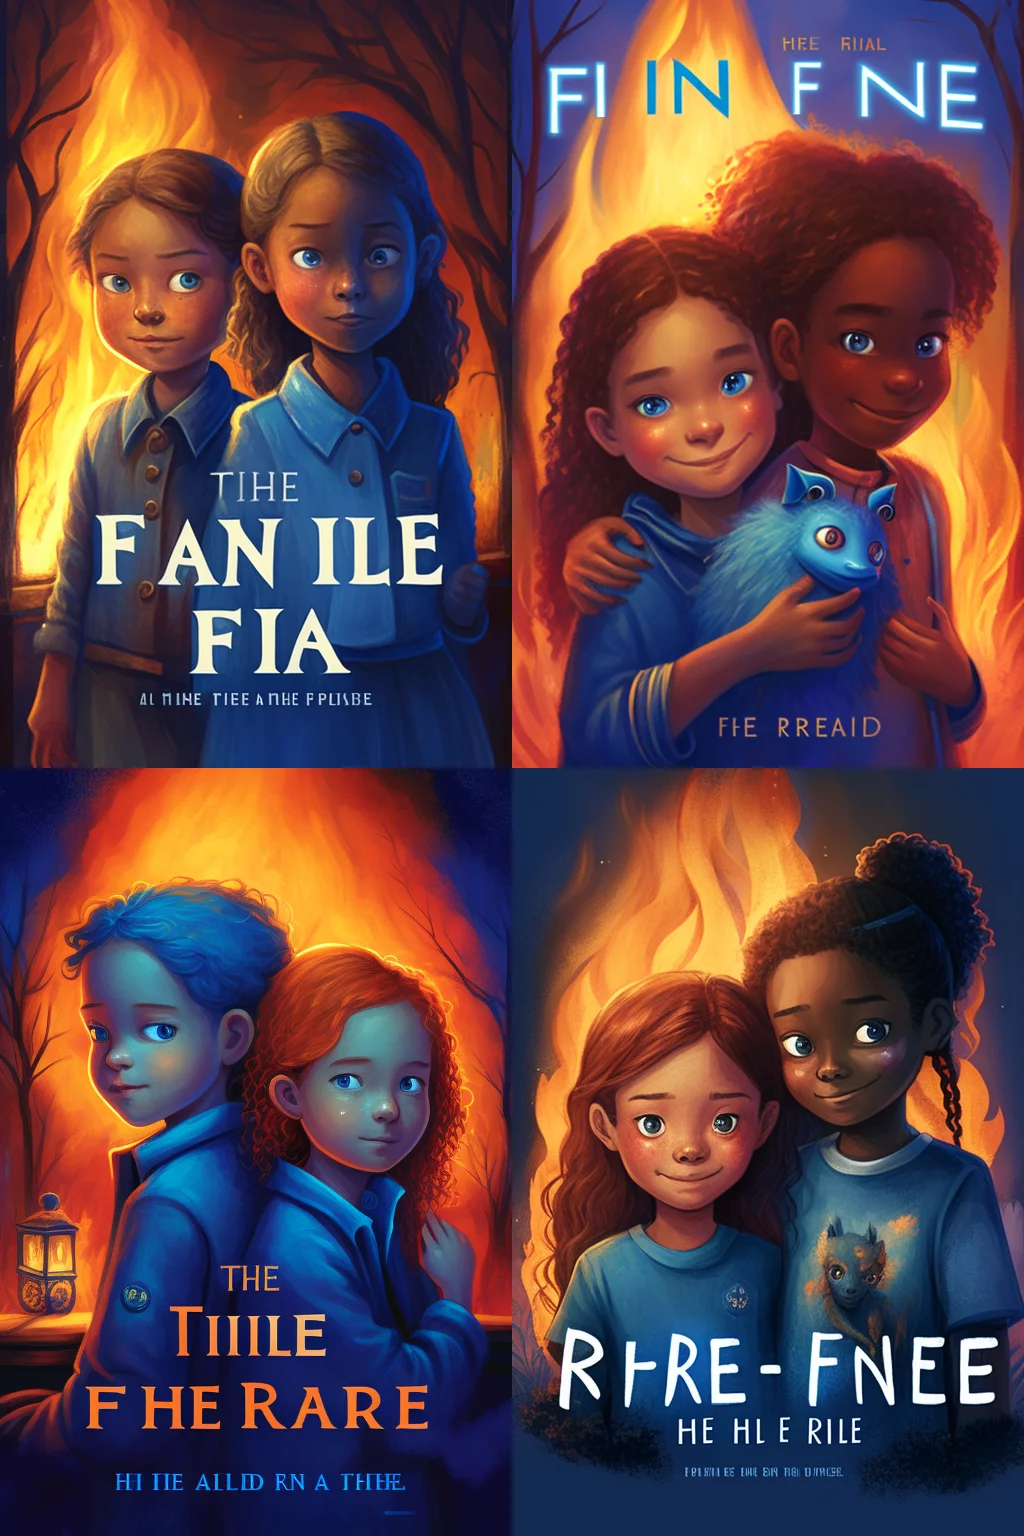 Fire blue children’s novel cover art